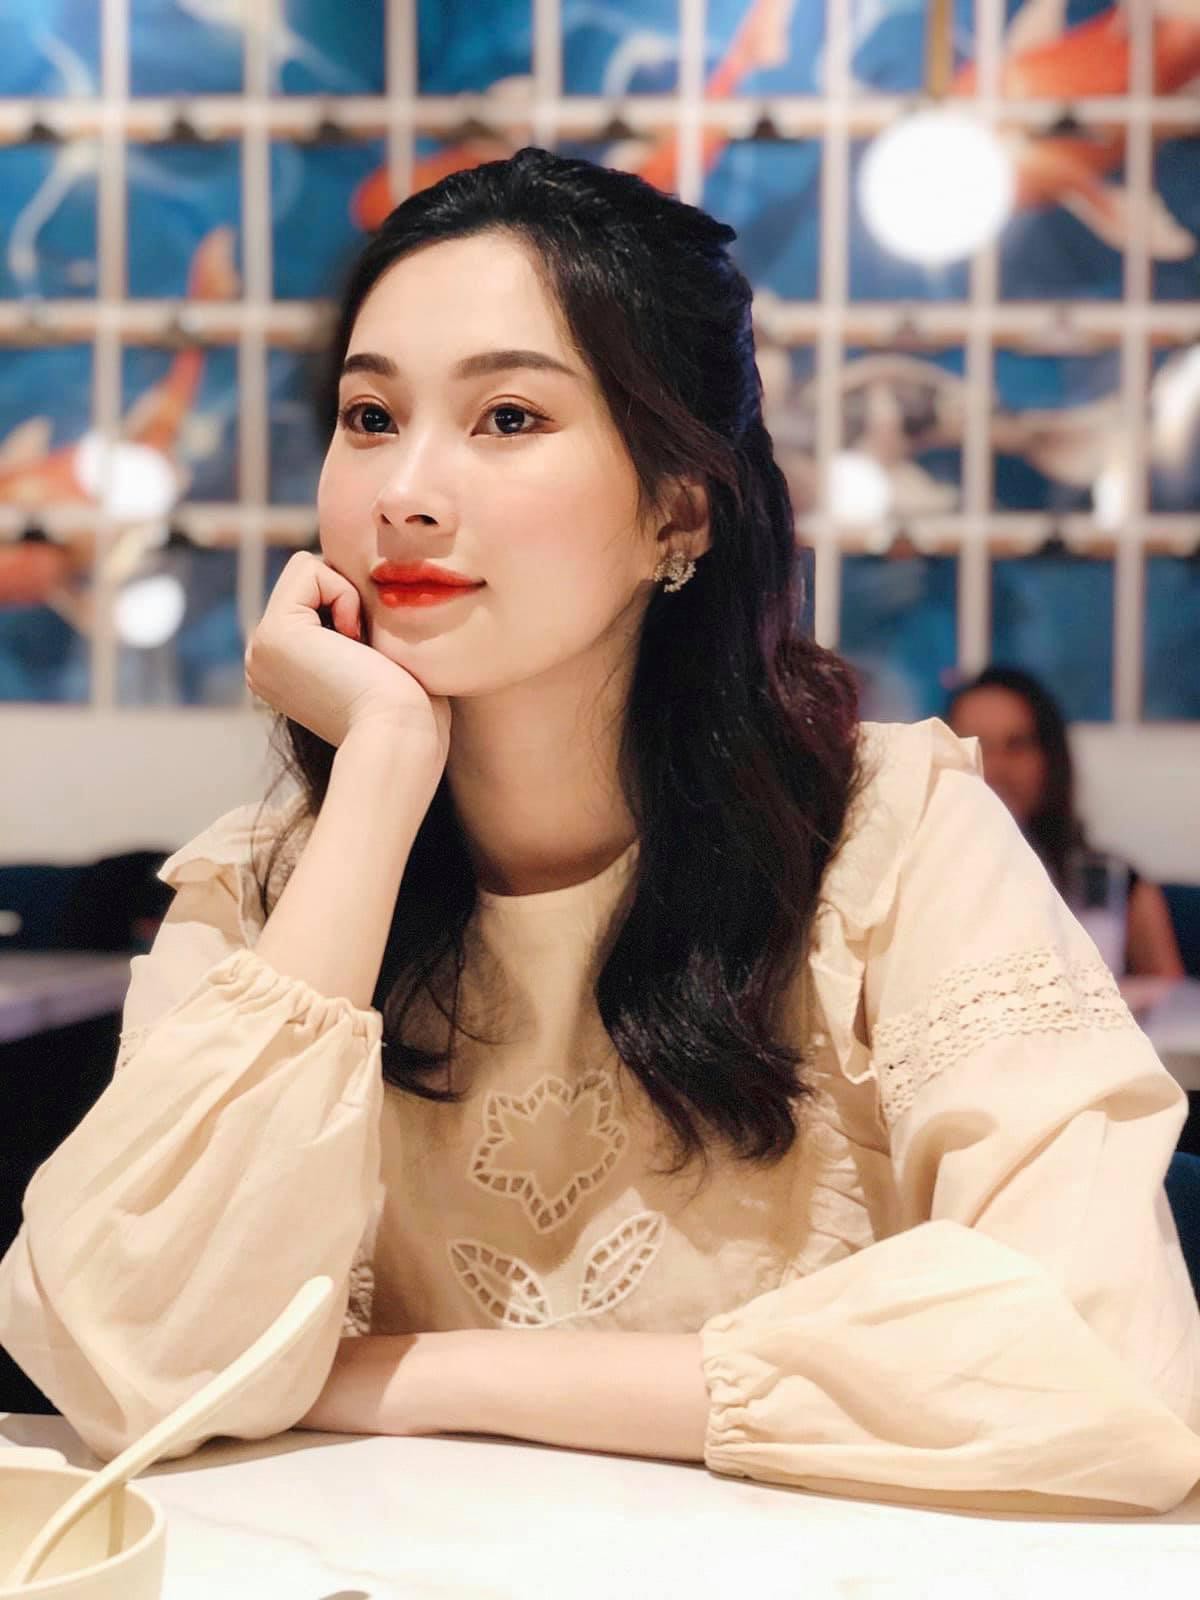 Loạt ảnh đời thường của Hoa hậu Đặng Thu Thảo khiến fan mê mệt-10